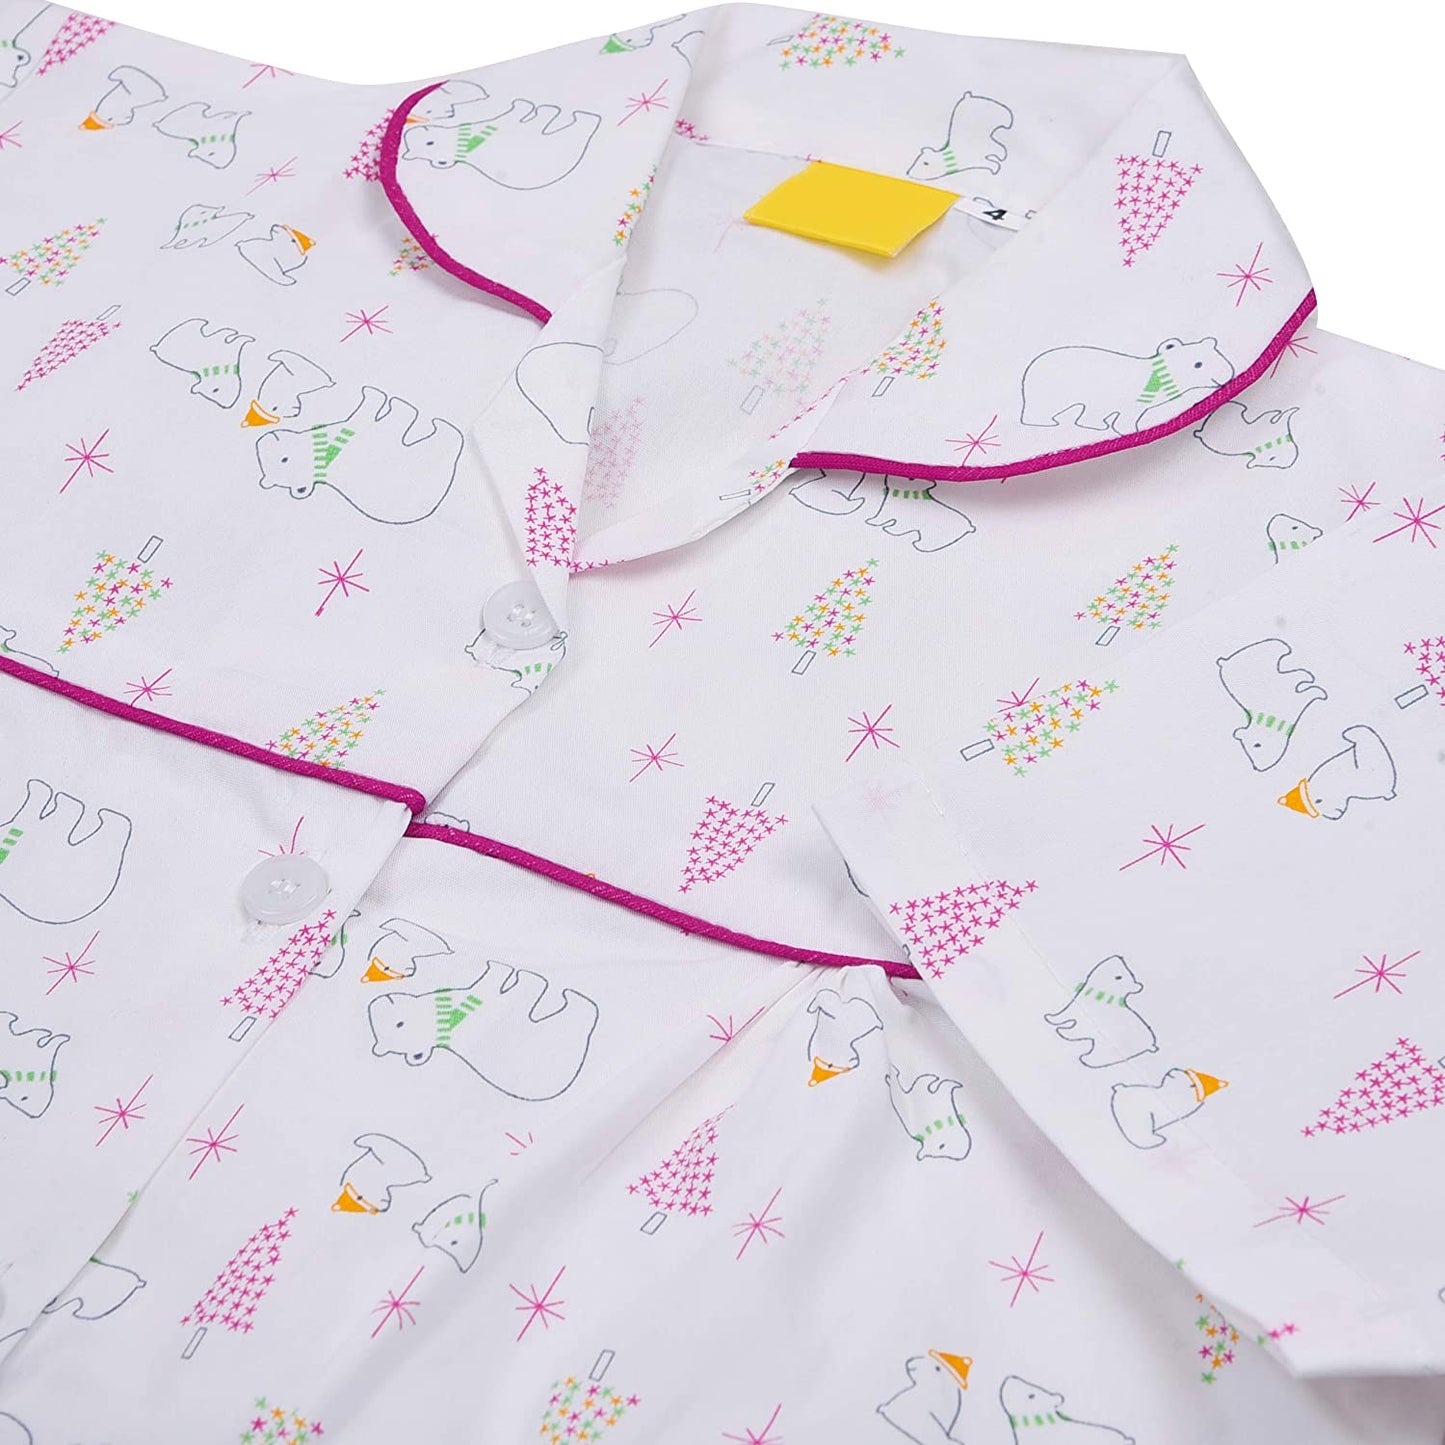 Wish Karo Cotton Nightdress for Baby Girls & Girls Payjama Set(ND04P)